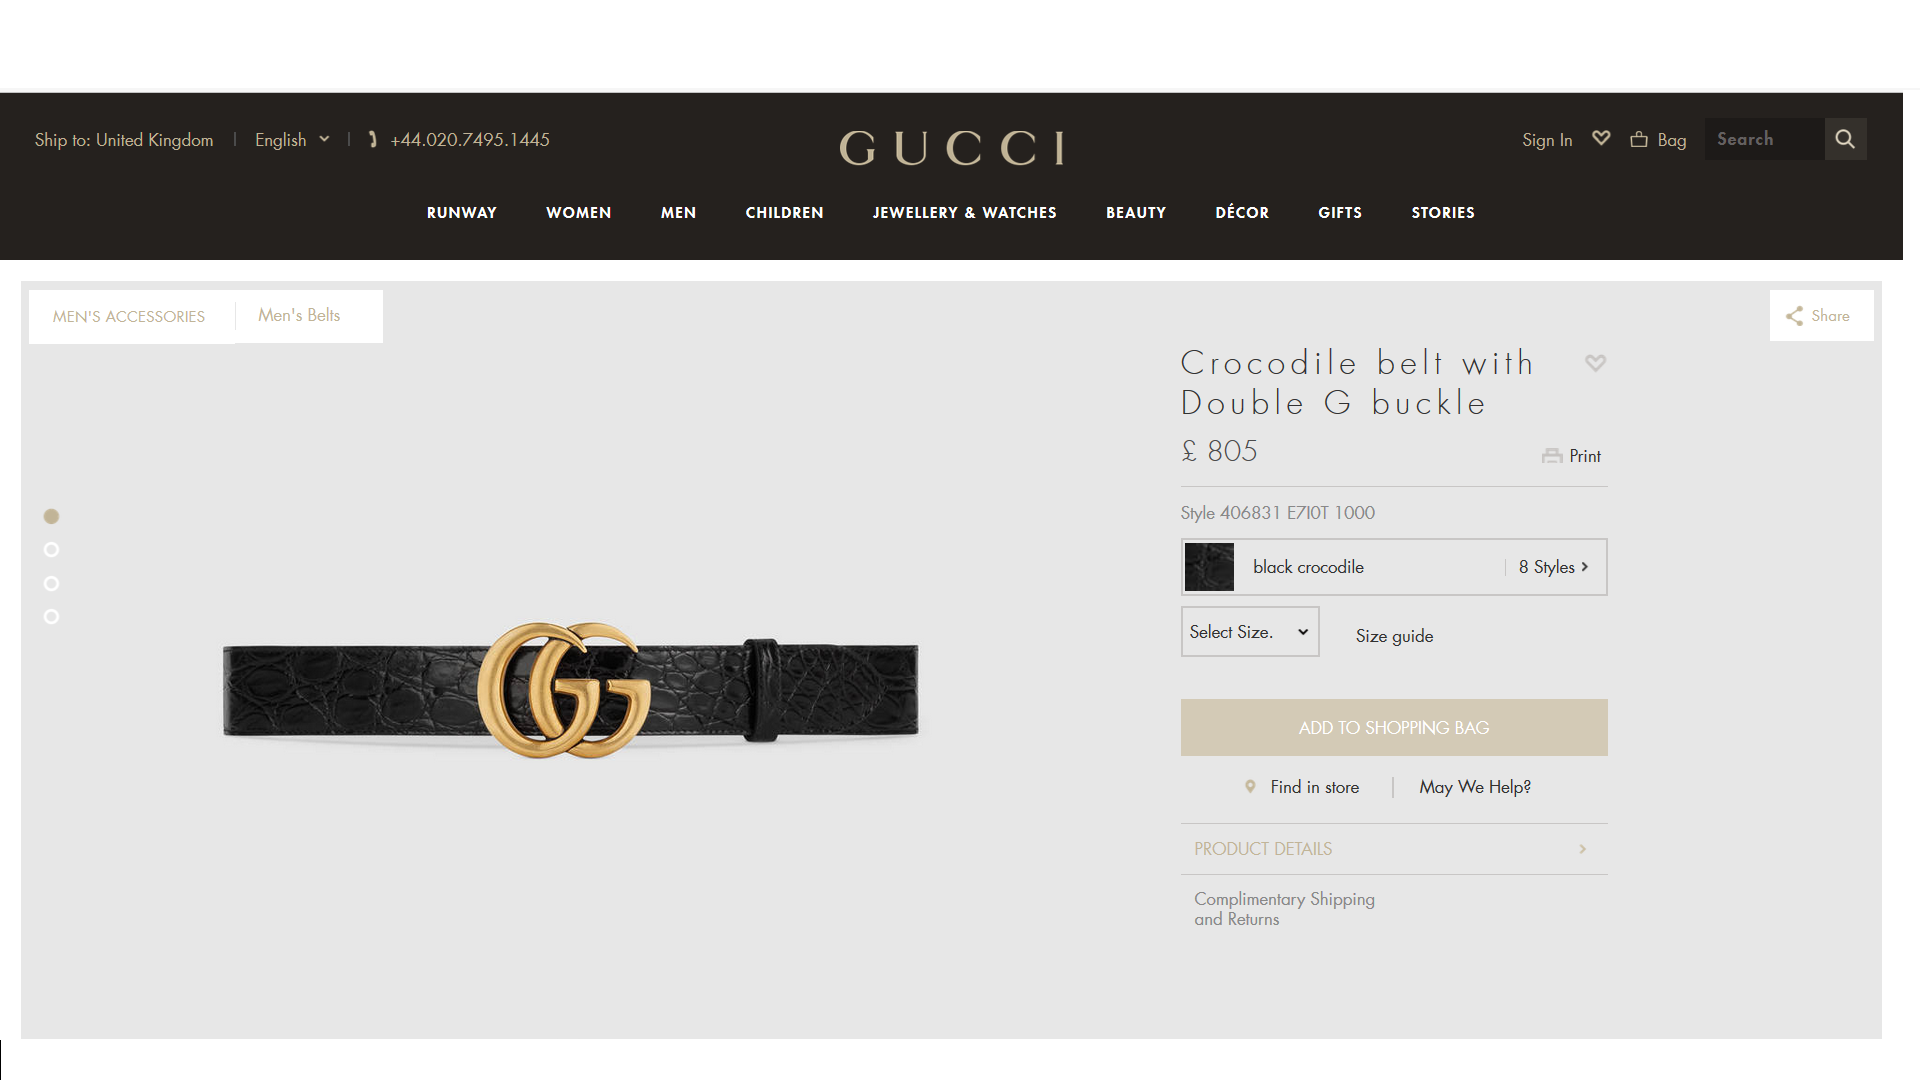 Gucci's Web Page